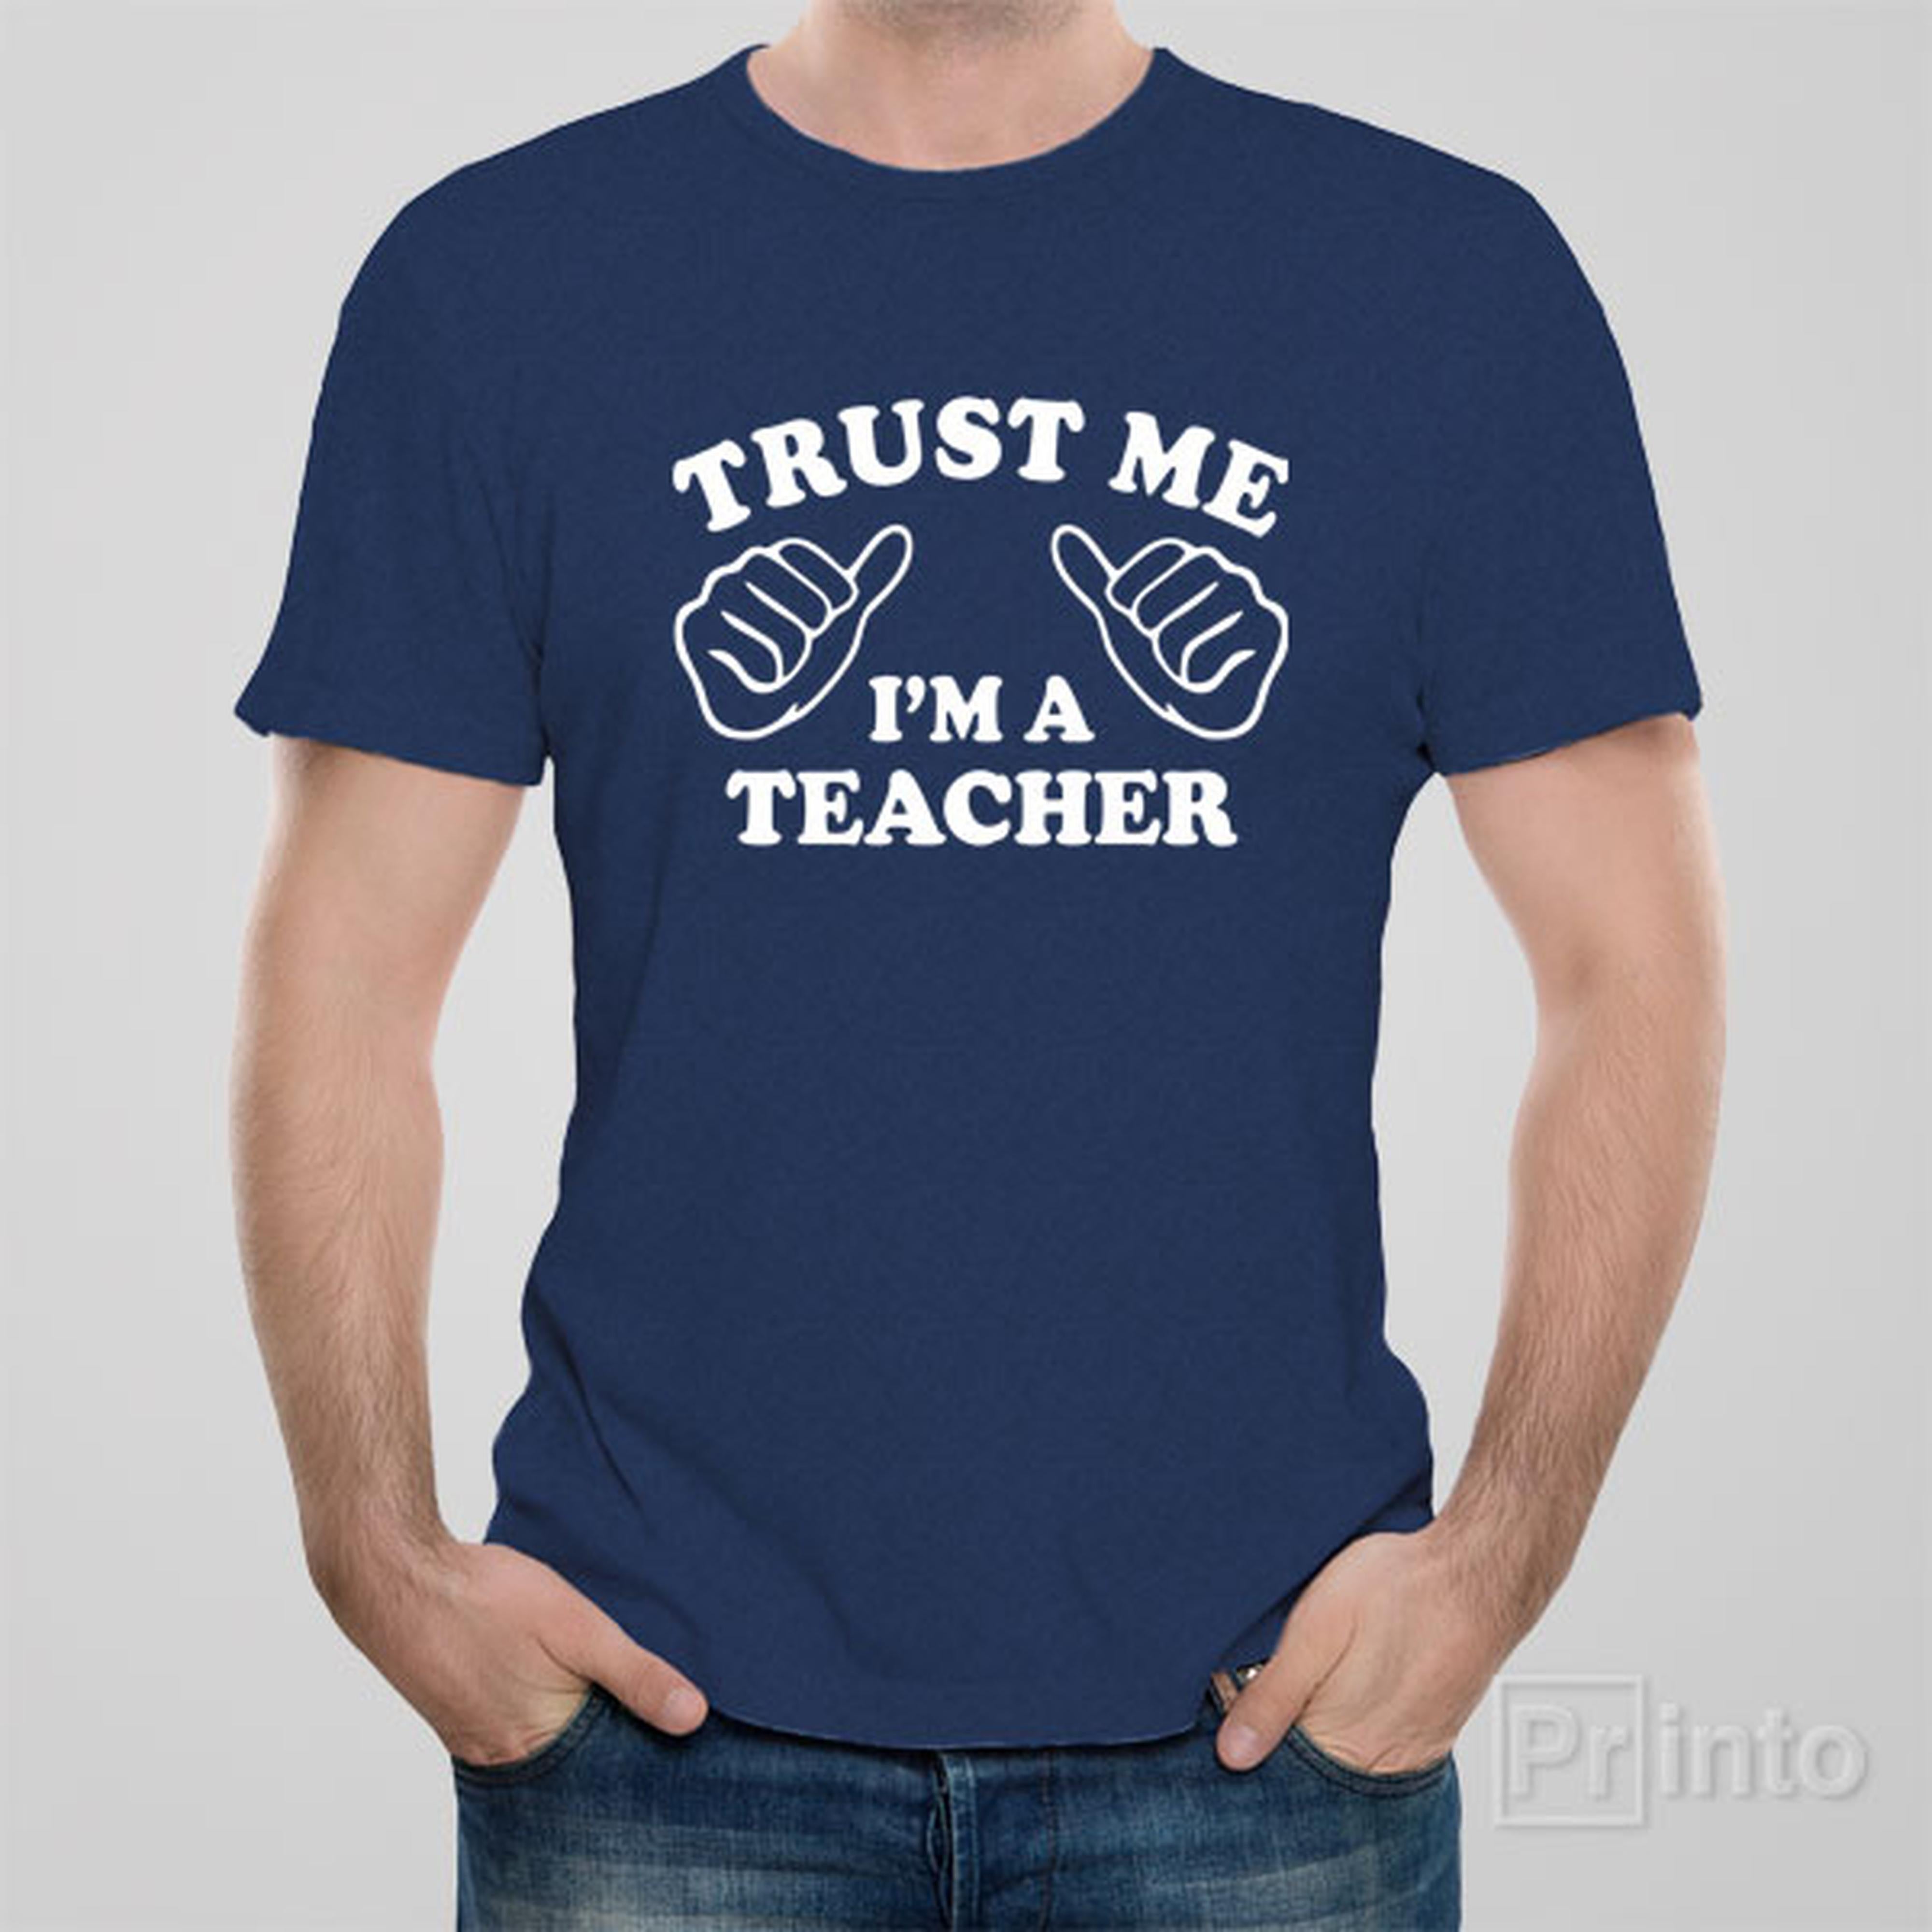 trust-me-i-am-a-teacher-t-shirt